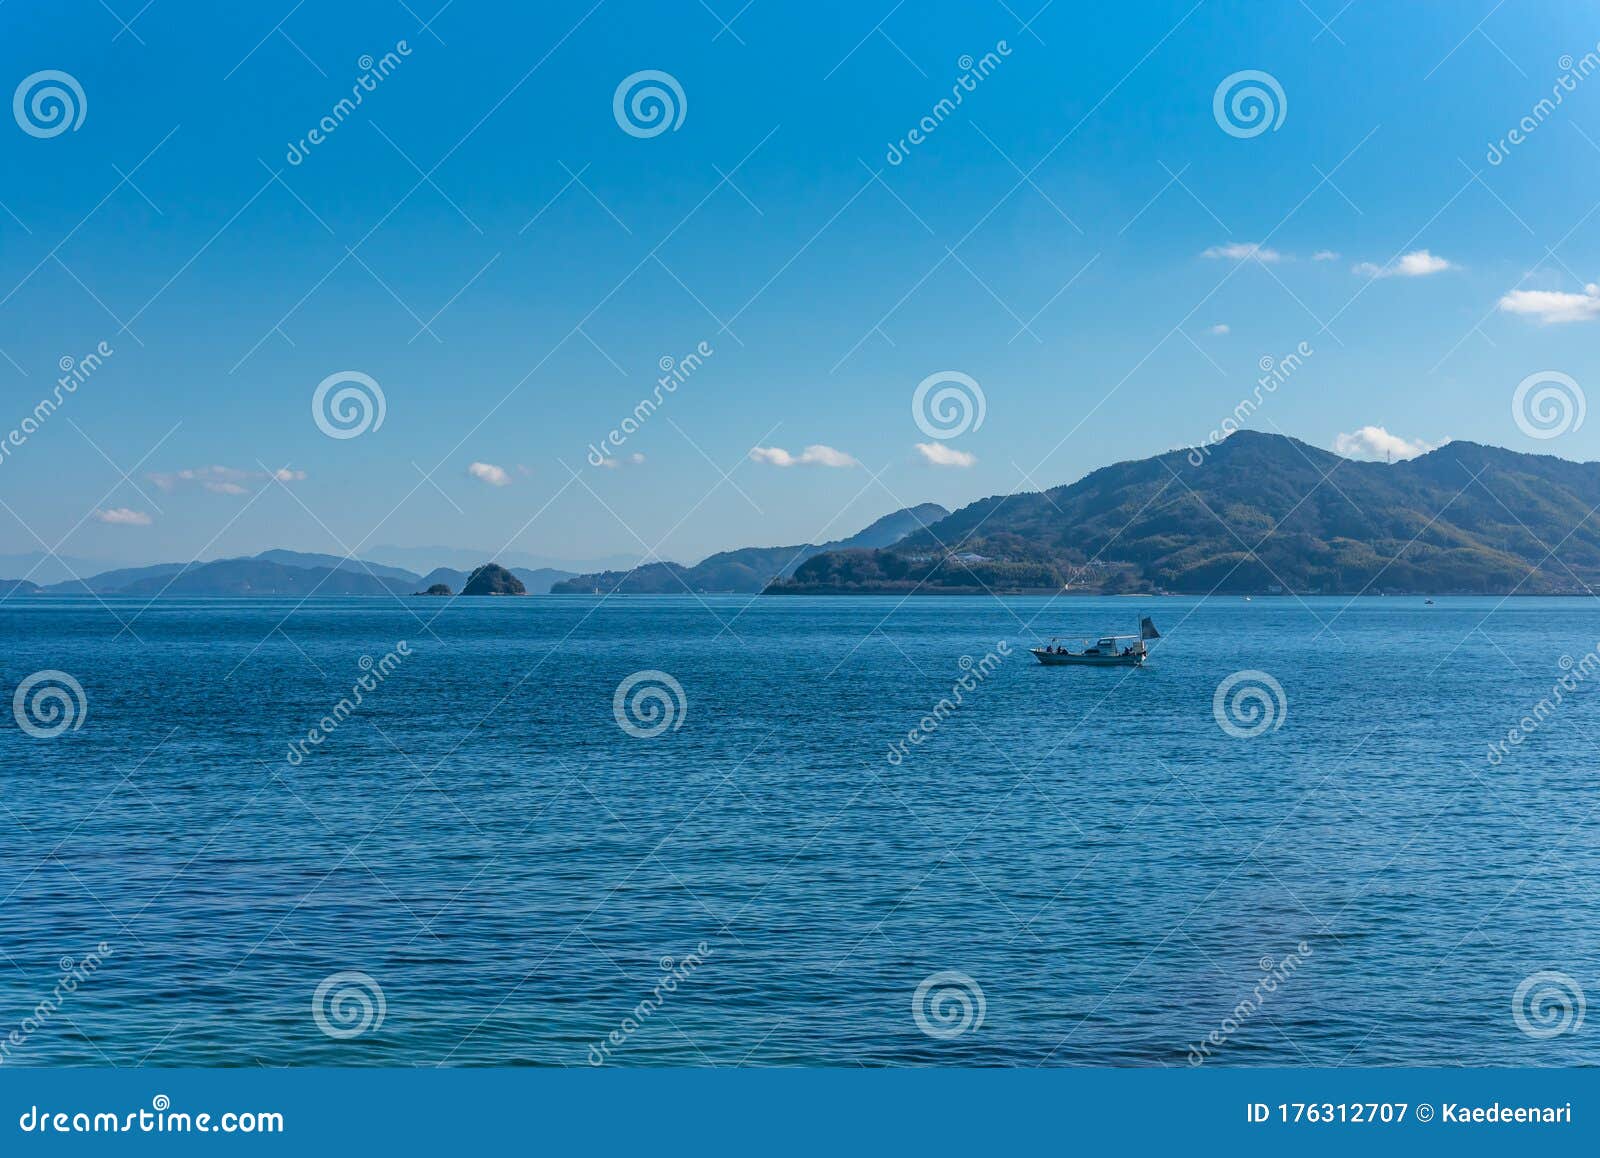 suo-oshima island yashiro-jima. an island located in the seto inland sea